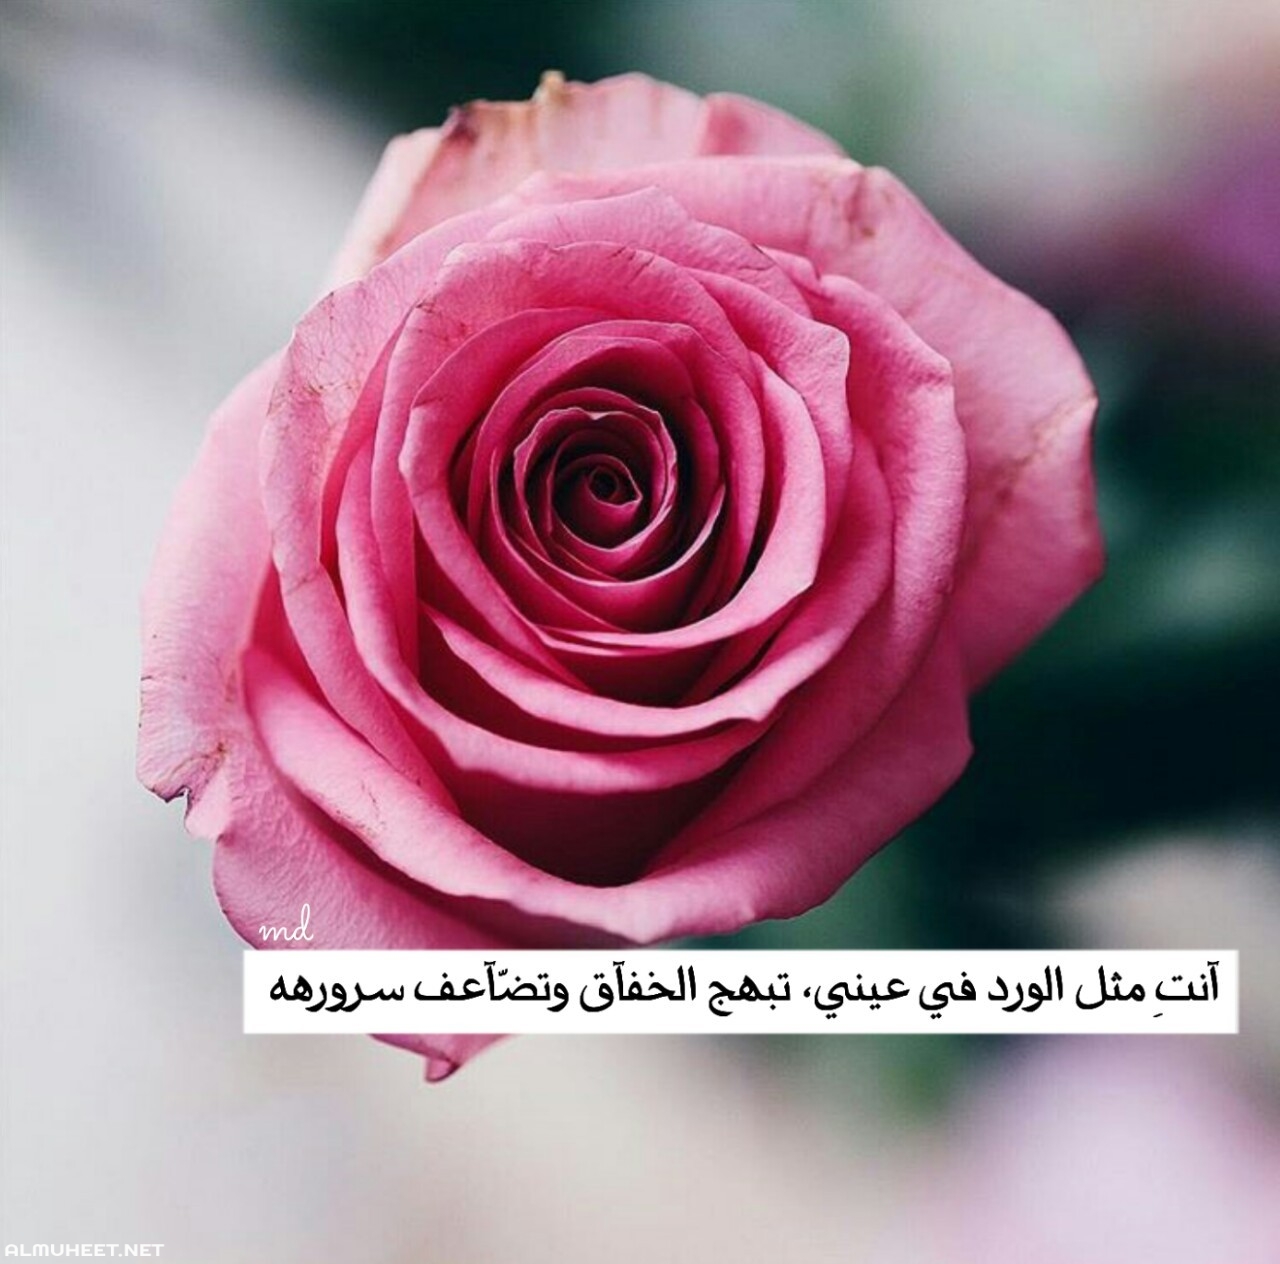 2869 4 شعر عن الورد - اشعار جميله معبرة الورود تشويق سلمان